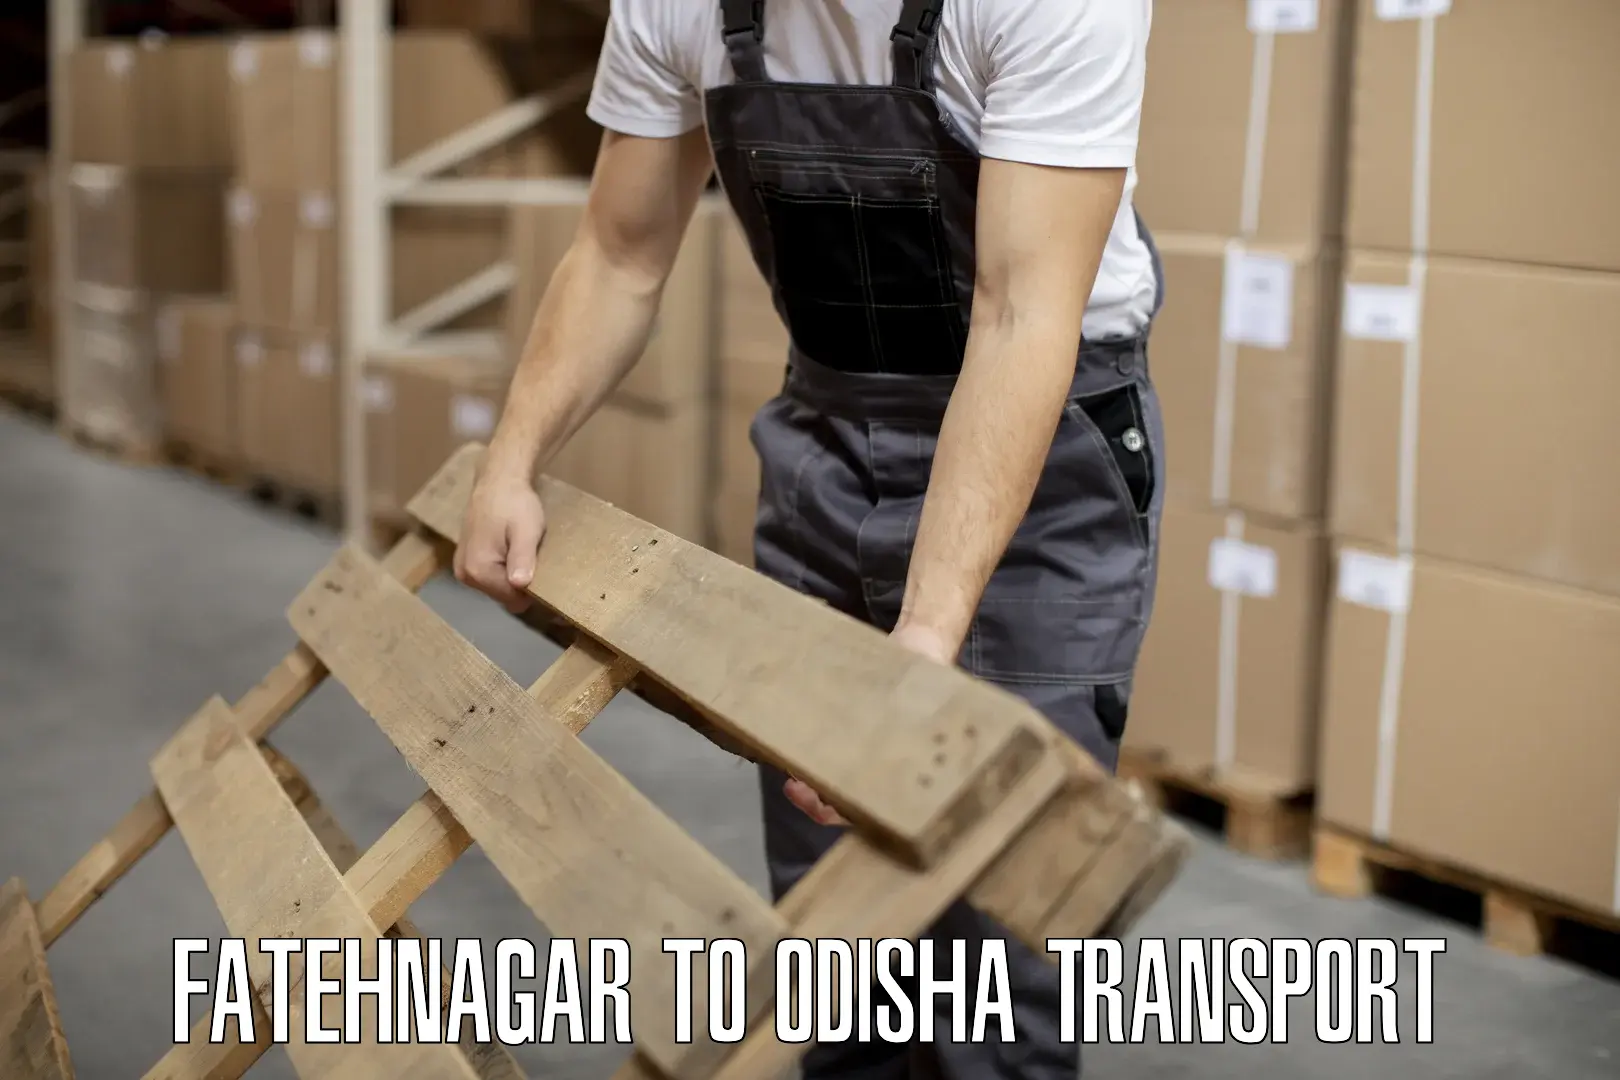 Furniture transport service Fatehnagar to Bhadrak